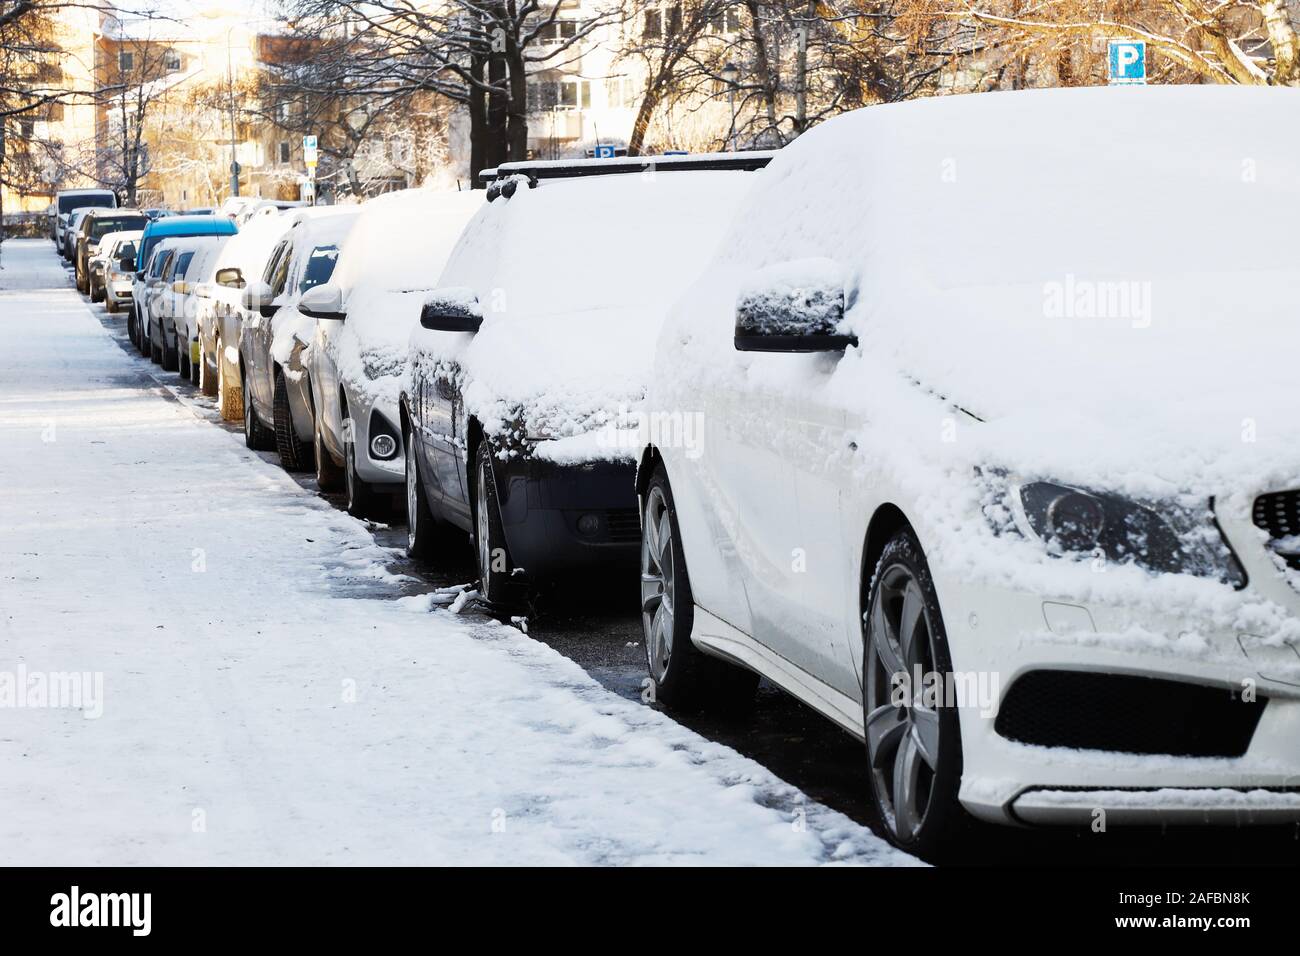 La neige a couvert de voitures stationnées dans un quartier résidentiel. Banque D'Images